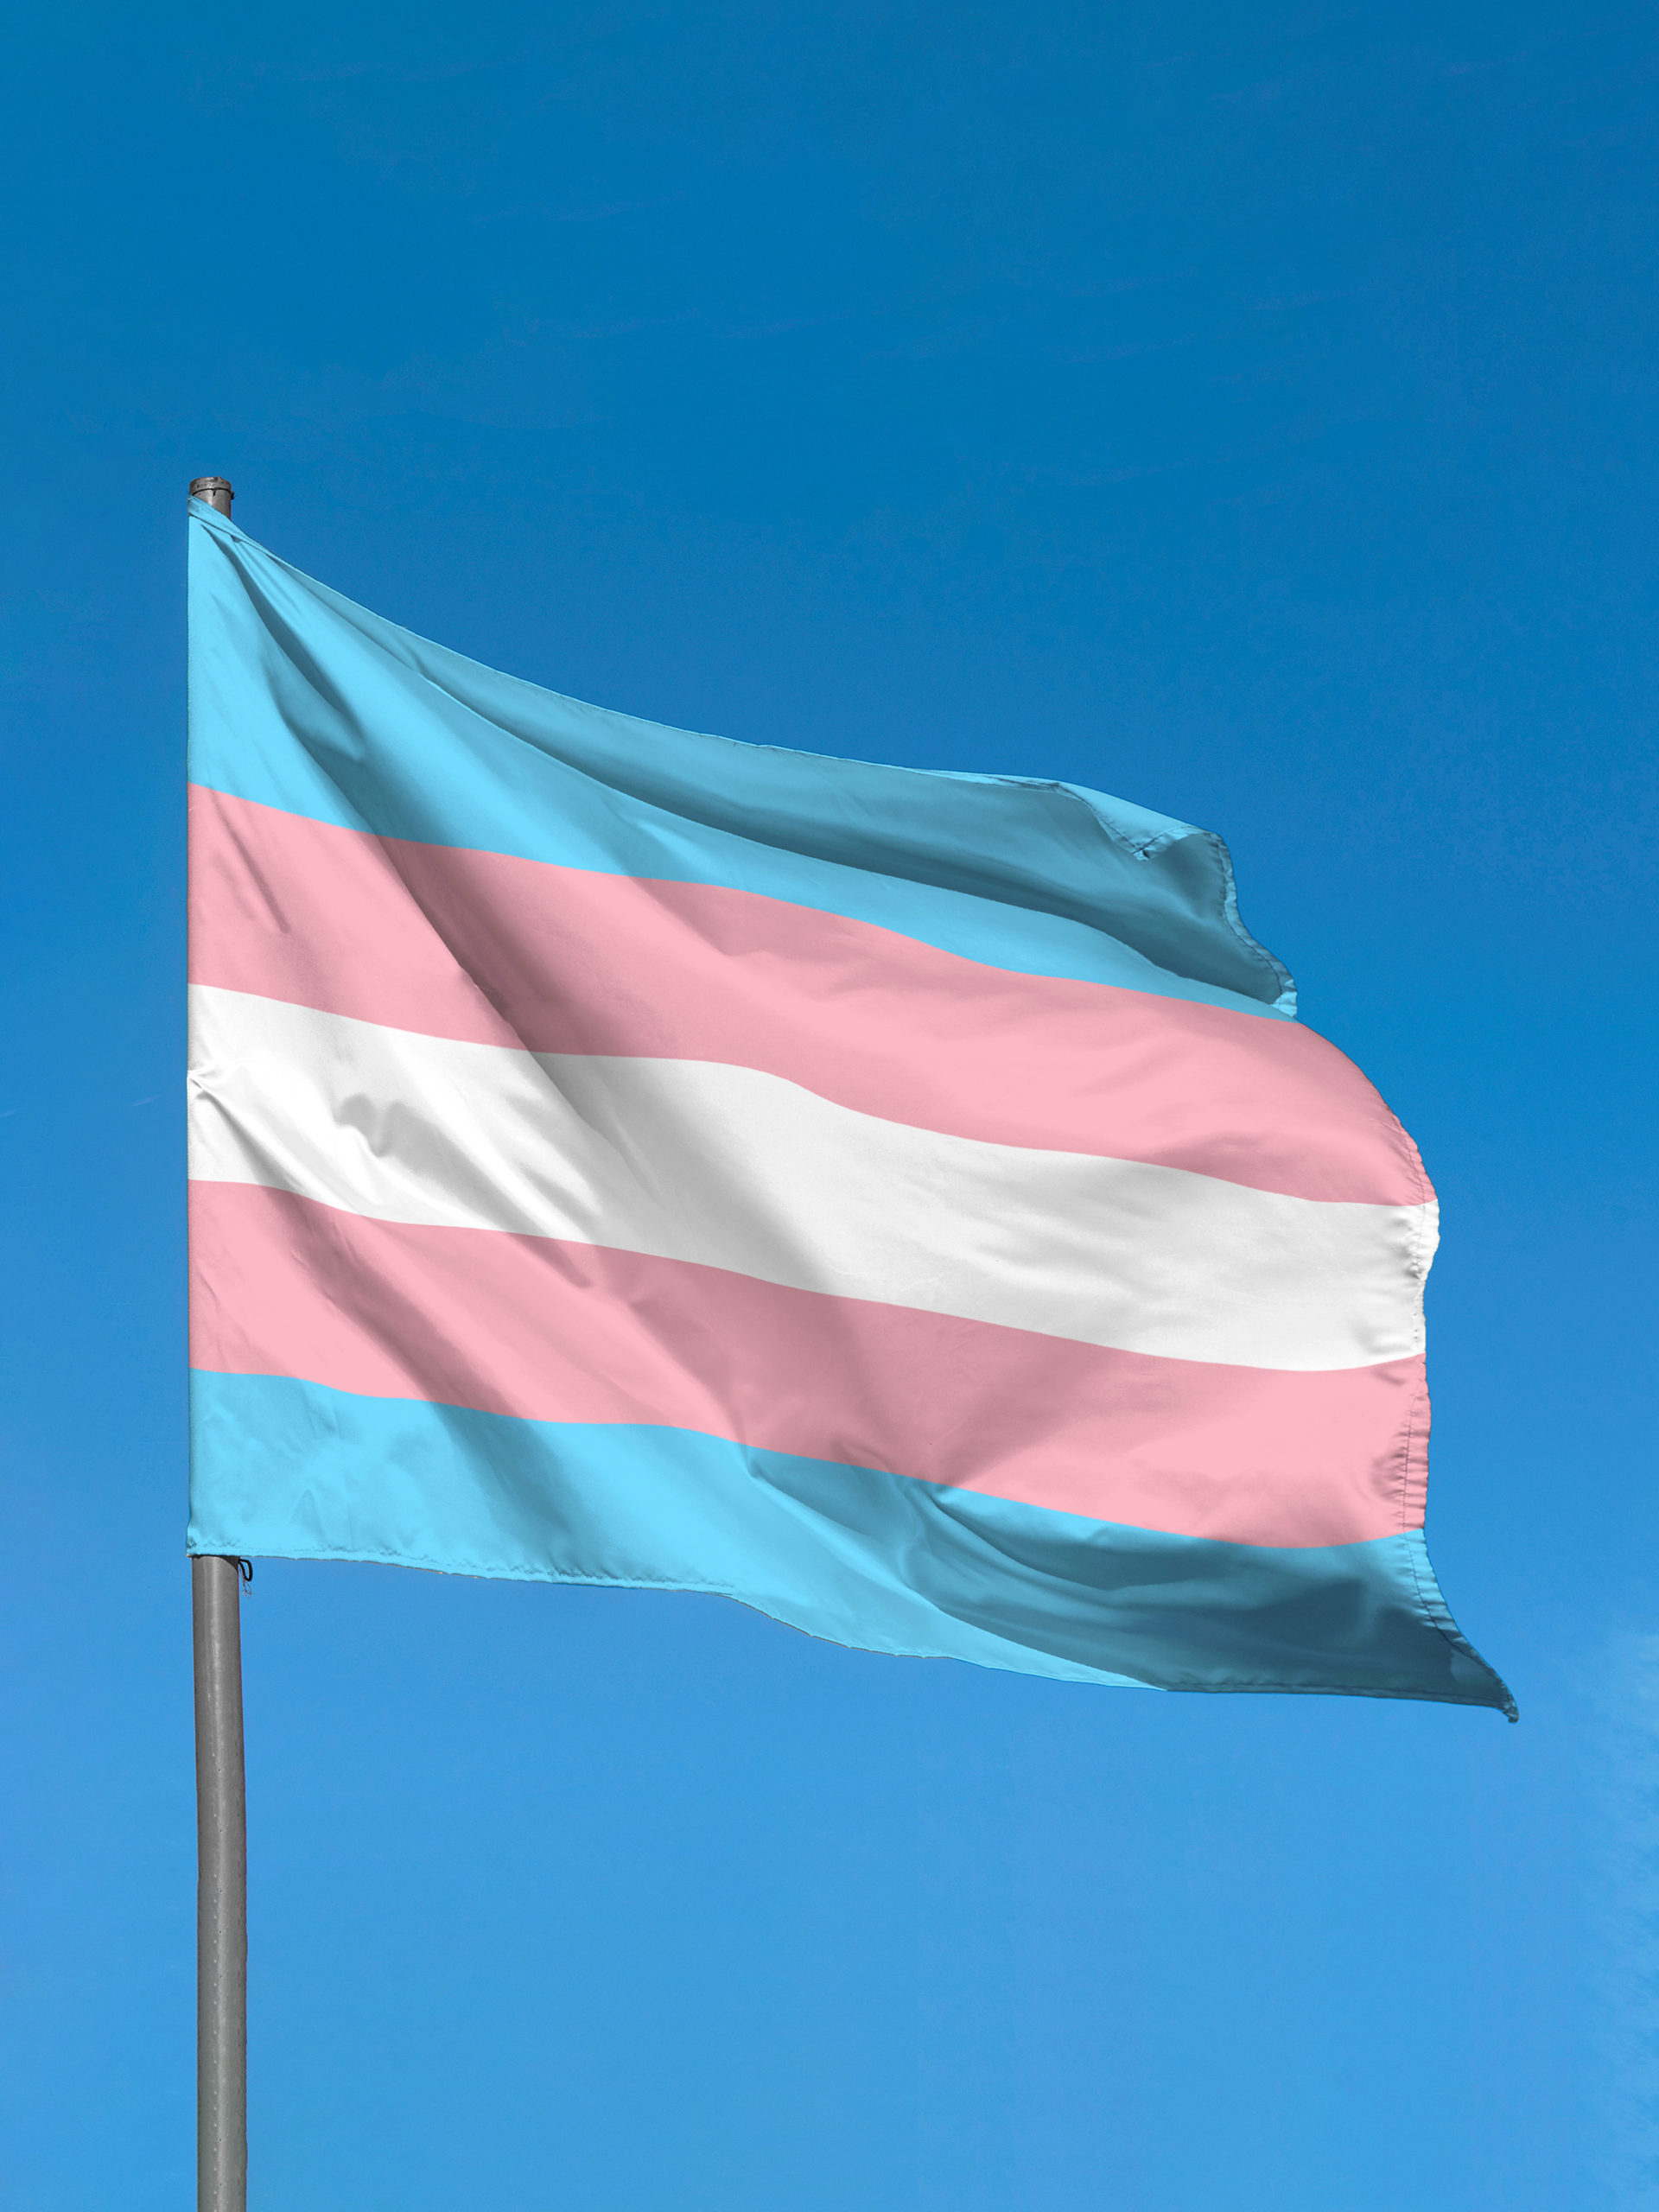 Transgender flag waving against blue sky